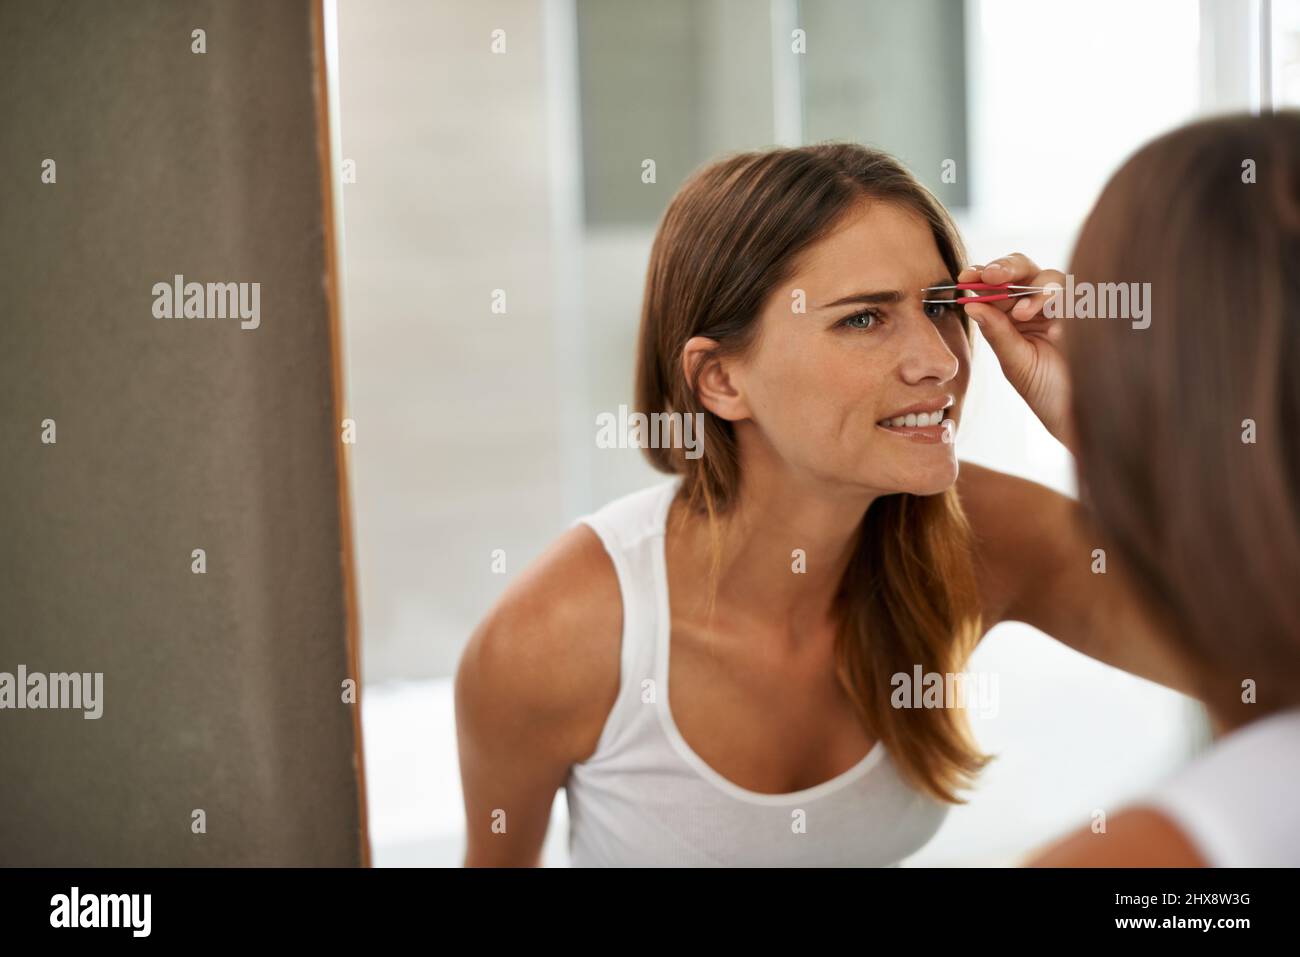 Schön zu sein kann manchmal etwas schmerzhaft sein. Aufnahme einer jungen Frau, die schmerzlich ihre Augenbrauen in einem Badezimmerspiegel zettt. Stockfoto